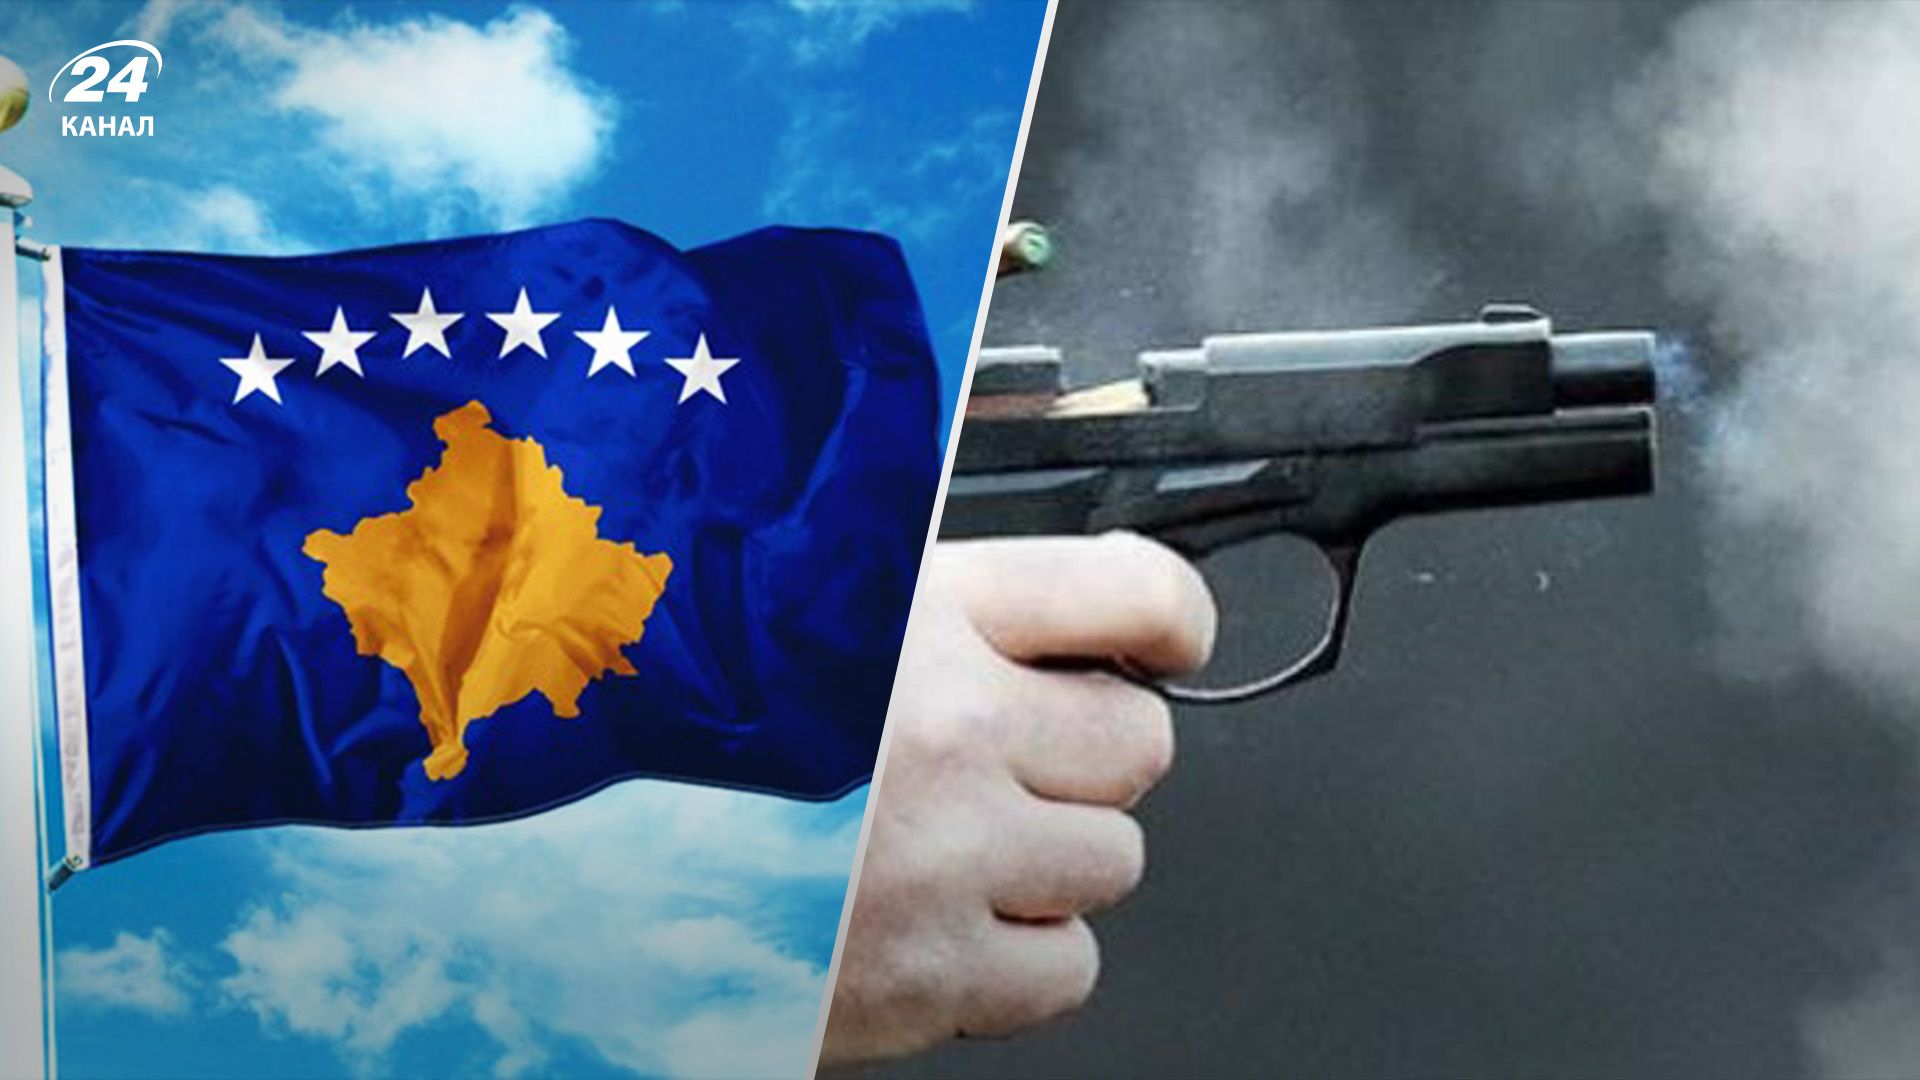 Рядом с патрулем НАТО в северной части Косово раздались выстрелы - 24 Канал